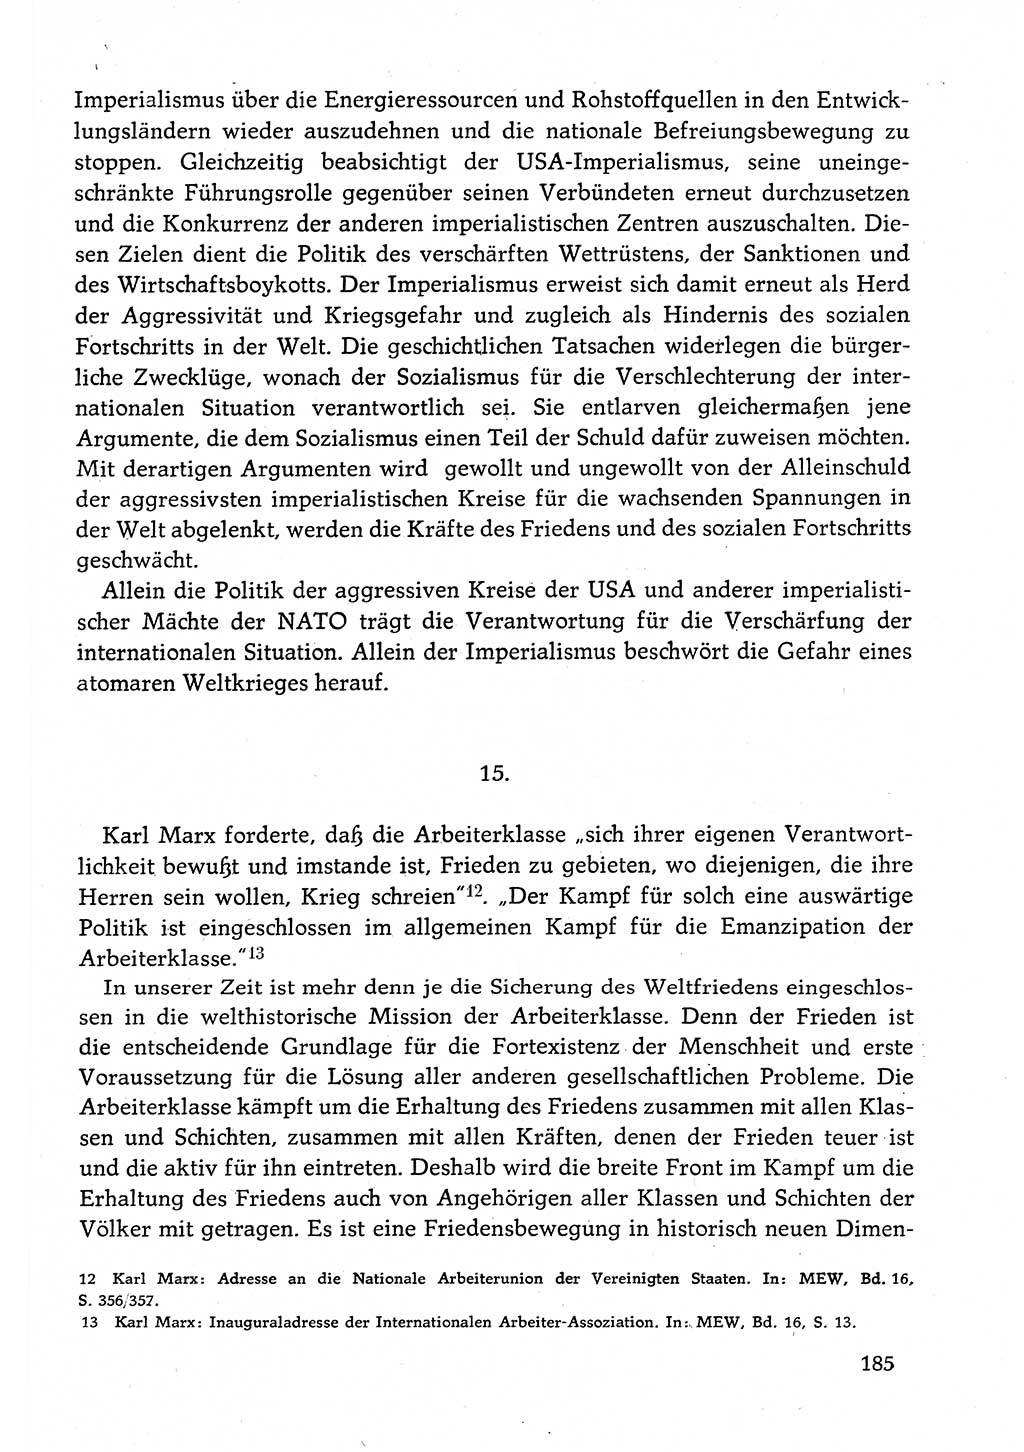 Dokumente der Sozialistischen Einheitspartei Deutschlands (SED) [Deutsche Demokratische Republik (DDR)] 1982-1983, Seite 185 (Dok. SED DDR 1982-1983, S. 185)